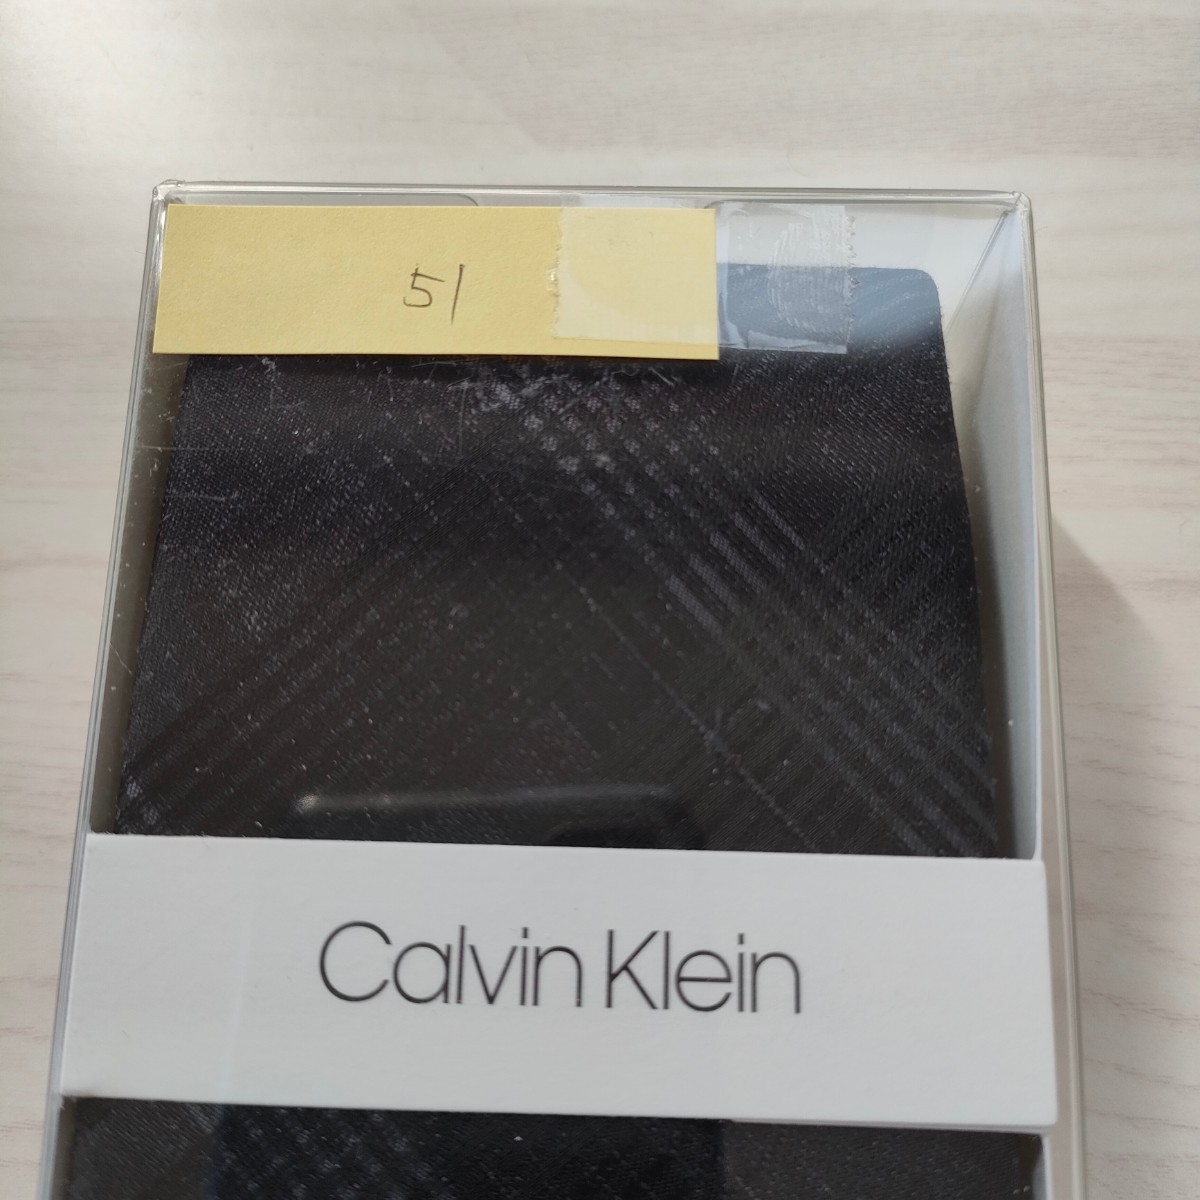  Calvin Klein (Calvin Klein)51 necktie new goods unused box attaching unopened goods accessory box, clear case 